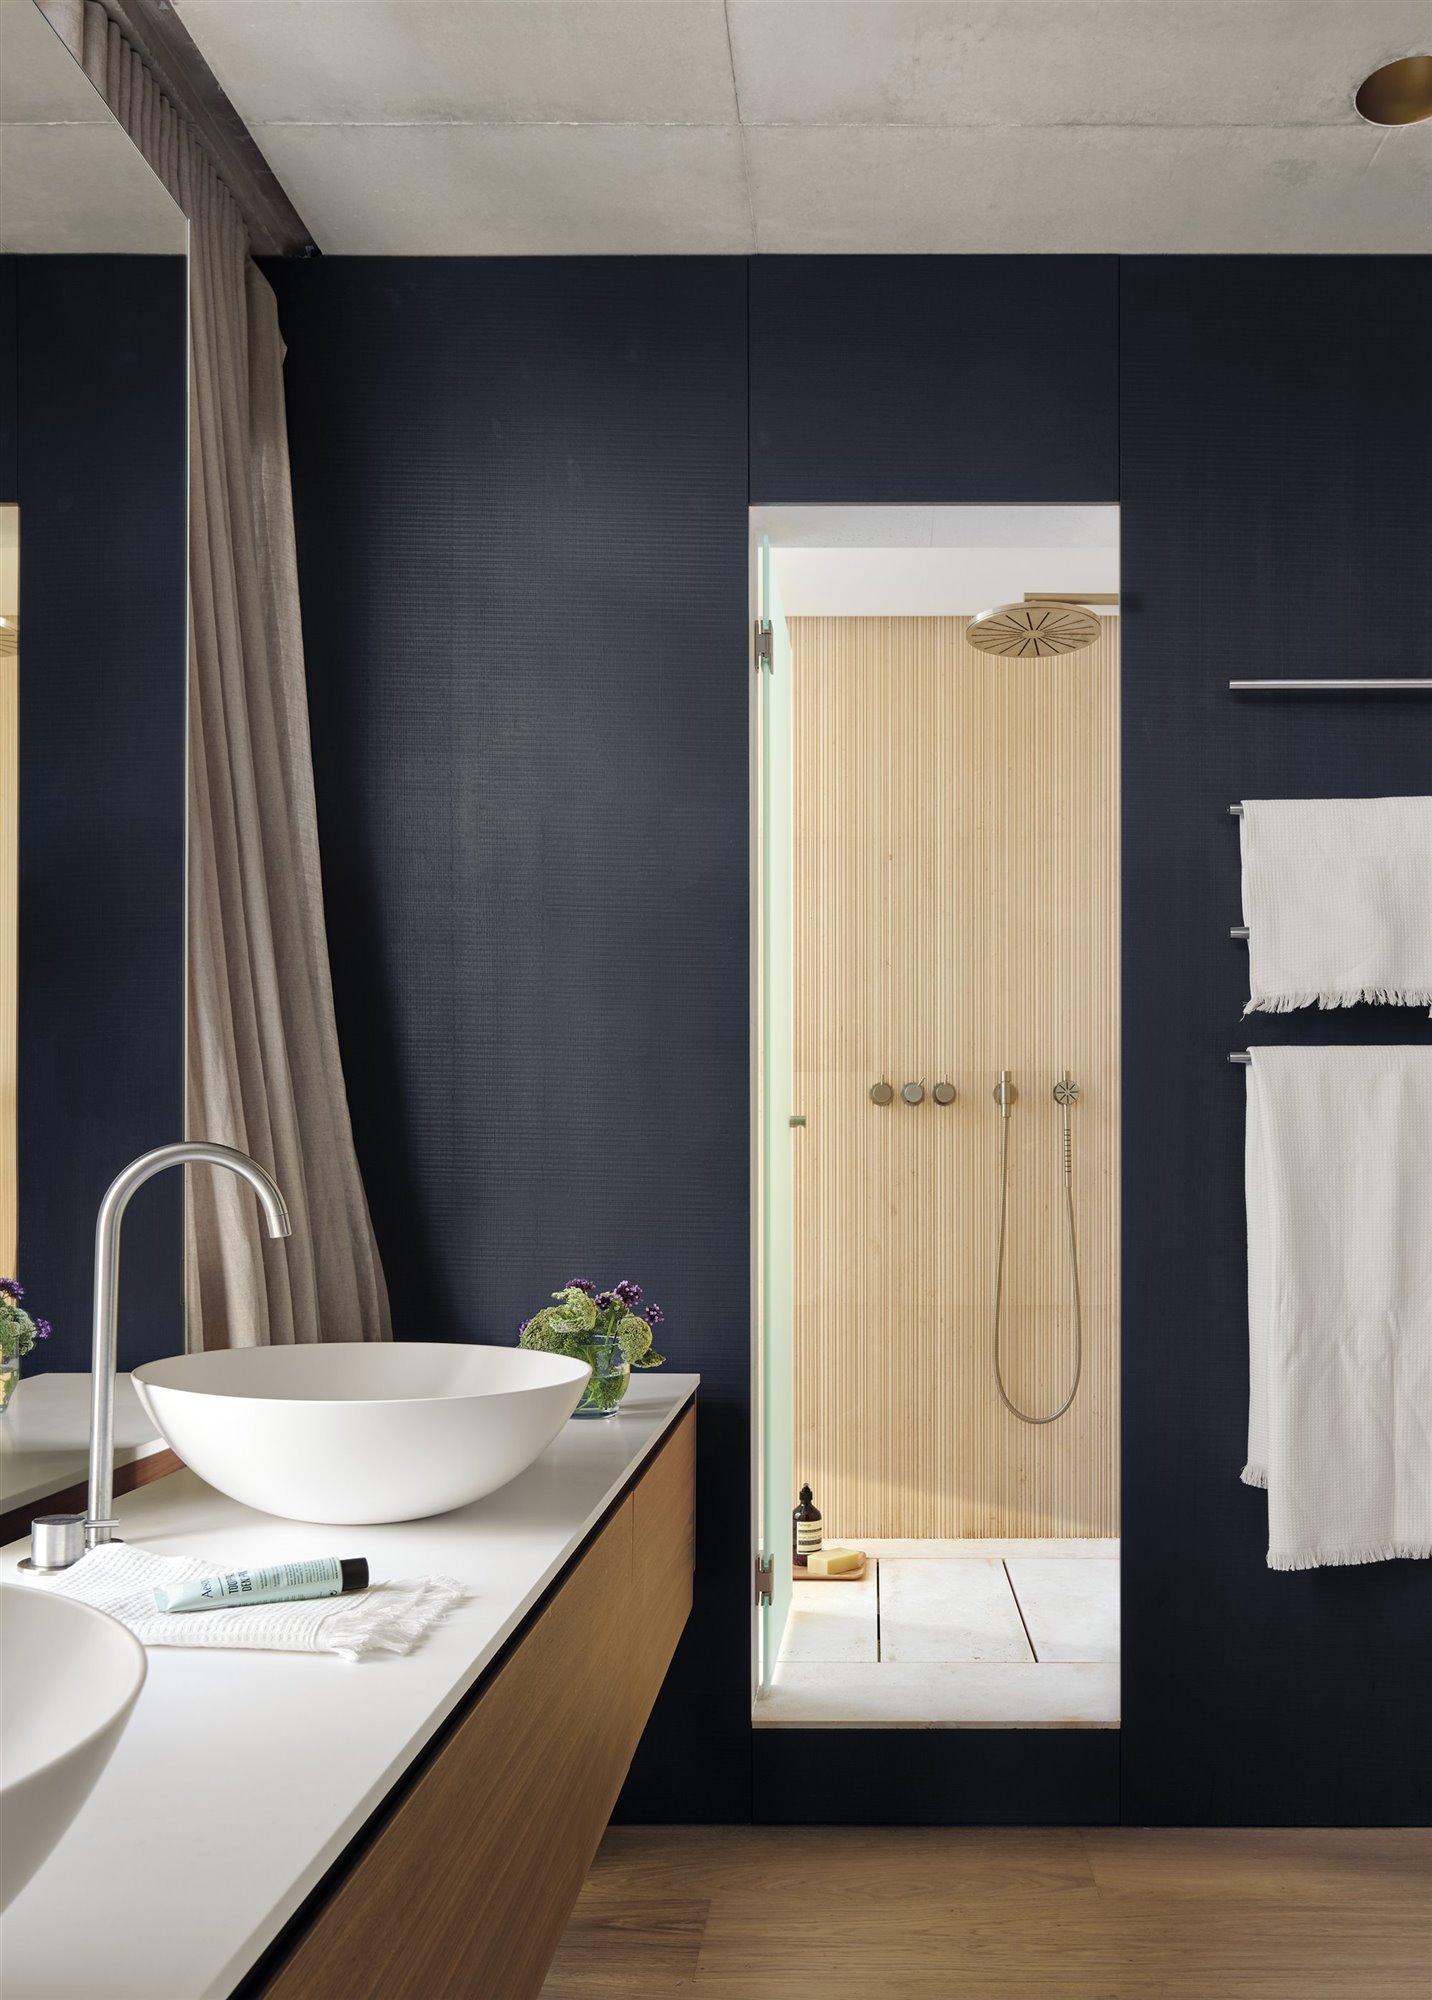 Mamparas modernas para darle una vuelta a tu baño  Piso de la ducha,  Diseño de baños, Remodelar baños